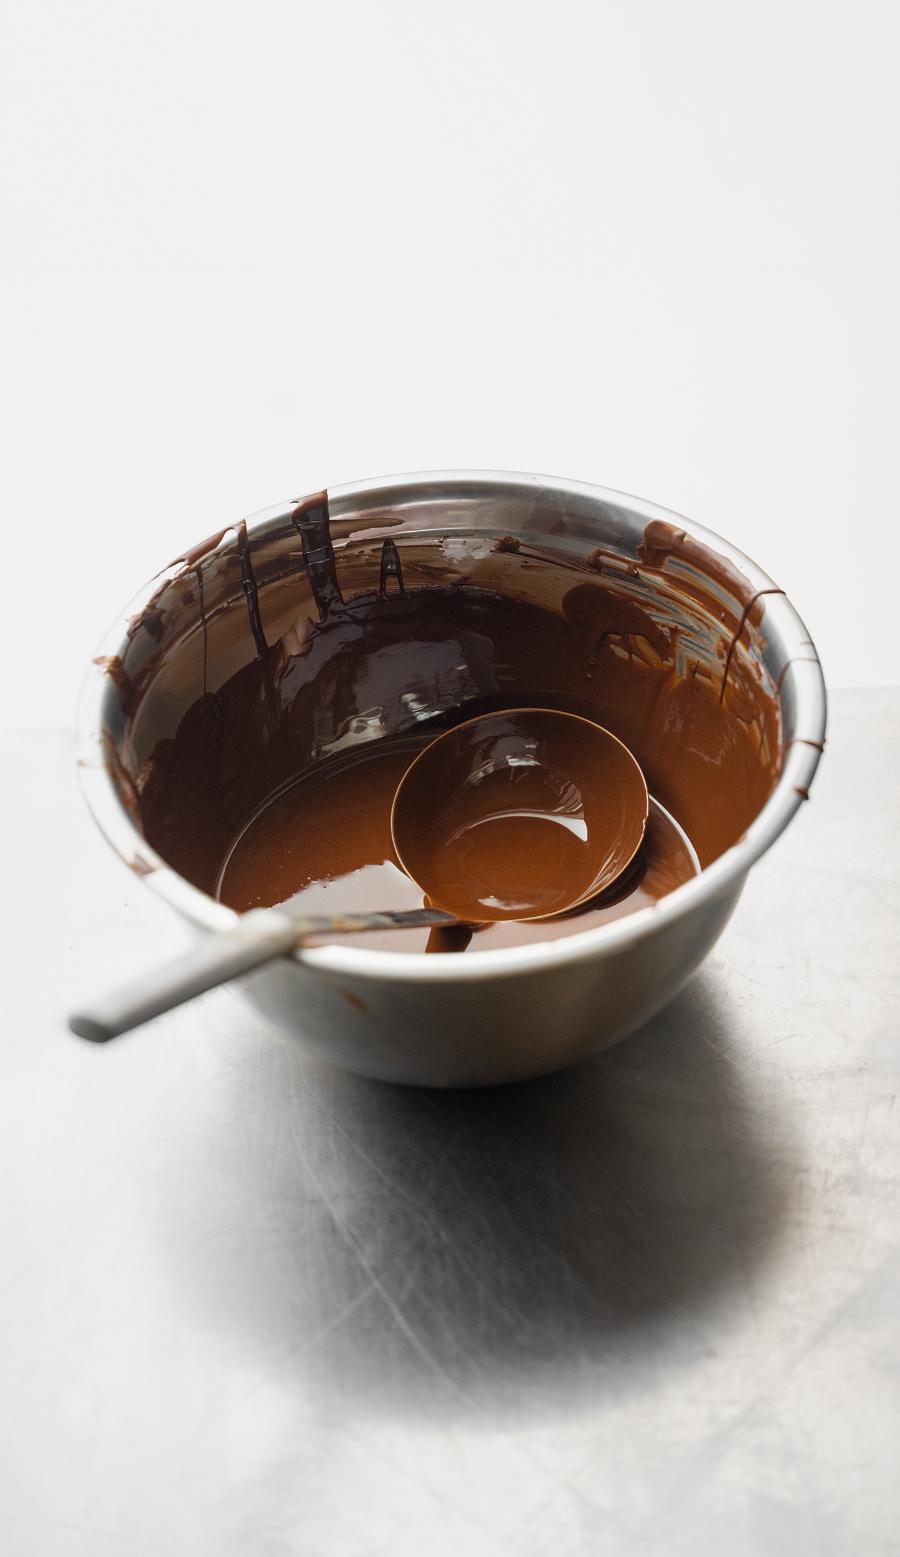 Słowo czekolada pochodzi prawdopodobnie od azteckiego xocoati - tak określano gorzki napój warzony z wody i ziaren kakaowca. (Fot. Michał Leja)